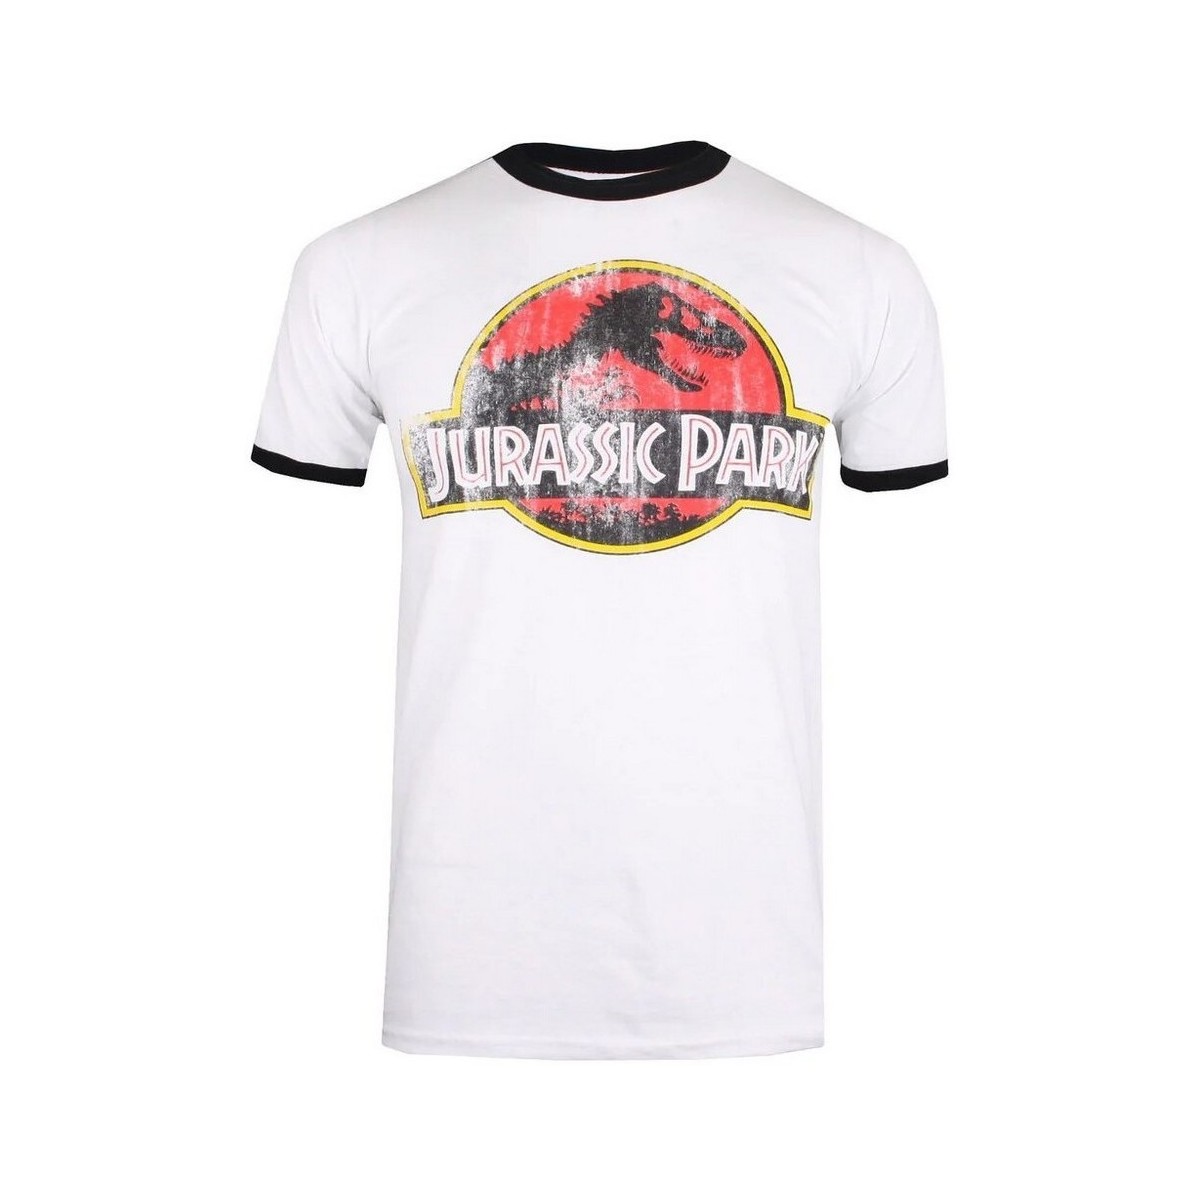 Vêtements Homme T-shirts manches longues Jurassic Park  Noir